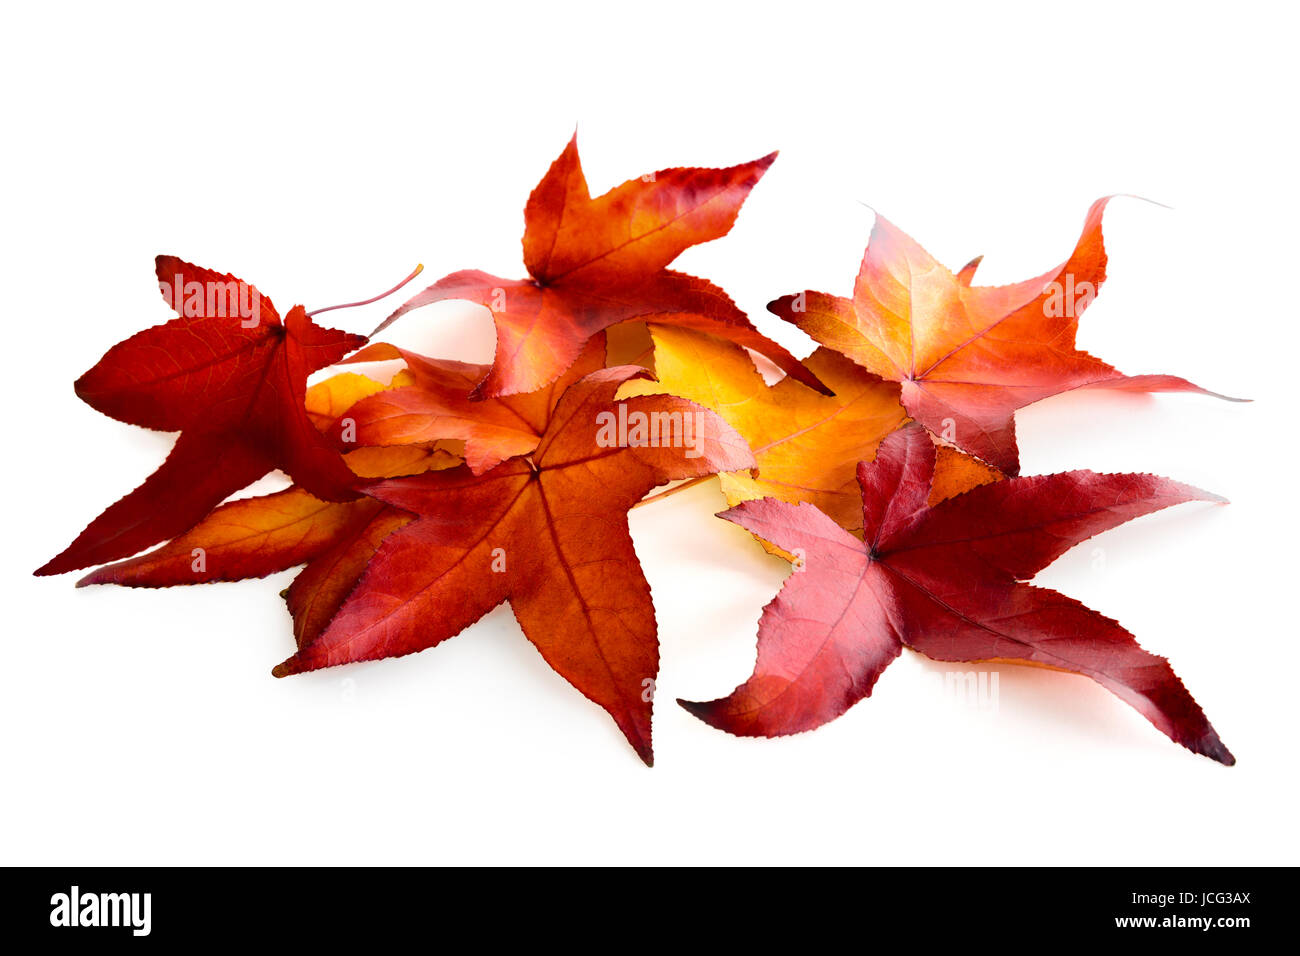 Buntem Arrangement aus Herbstlaub auf rein weißem Hintergrund Banque D'Images